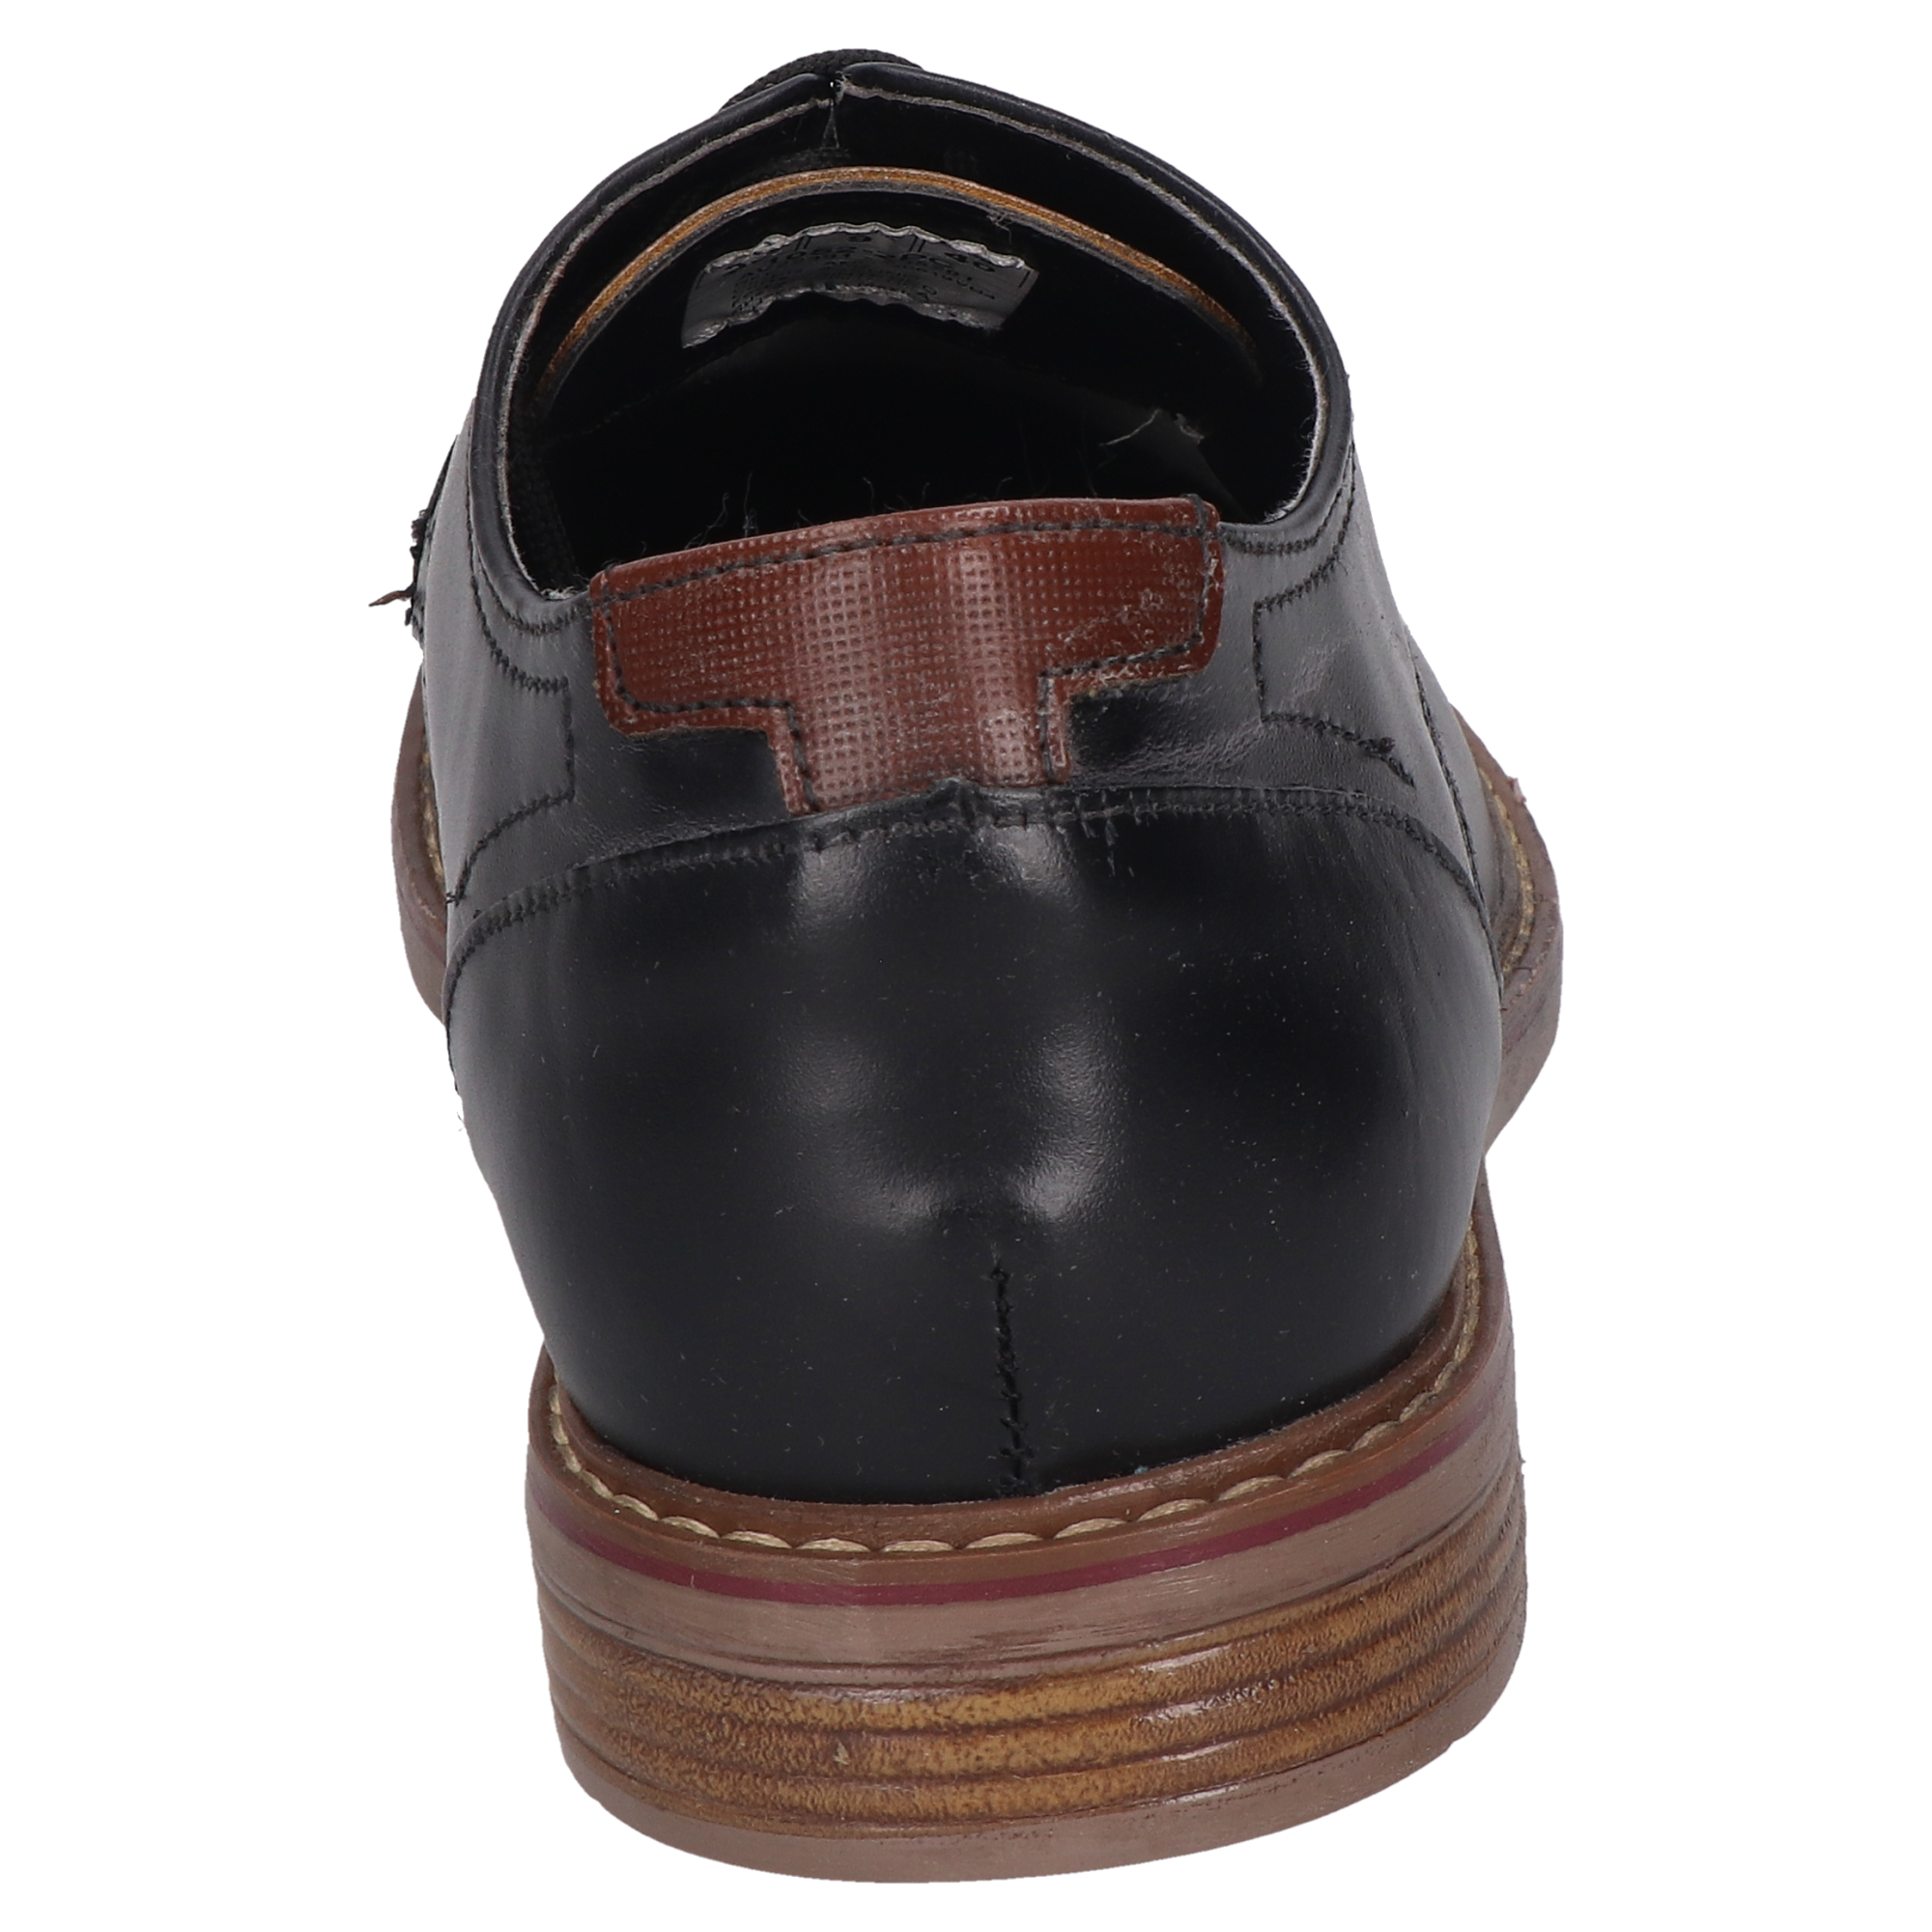 Zapato De Vestir Caballero 57-1052-2Pc Negro